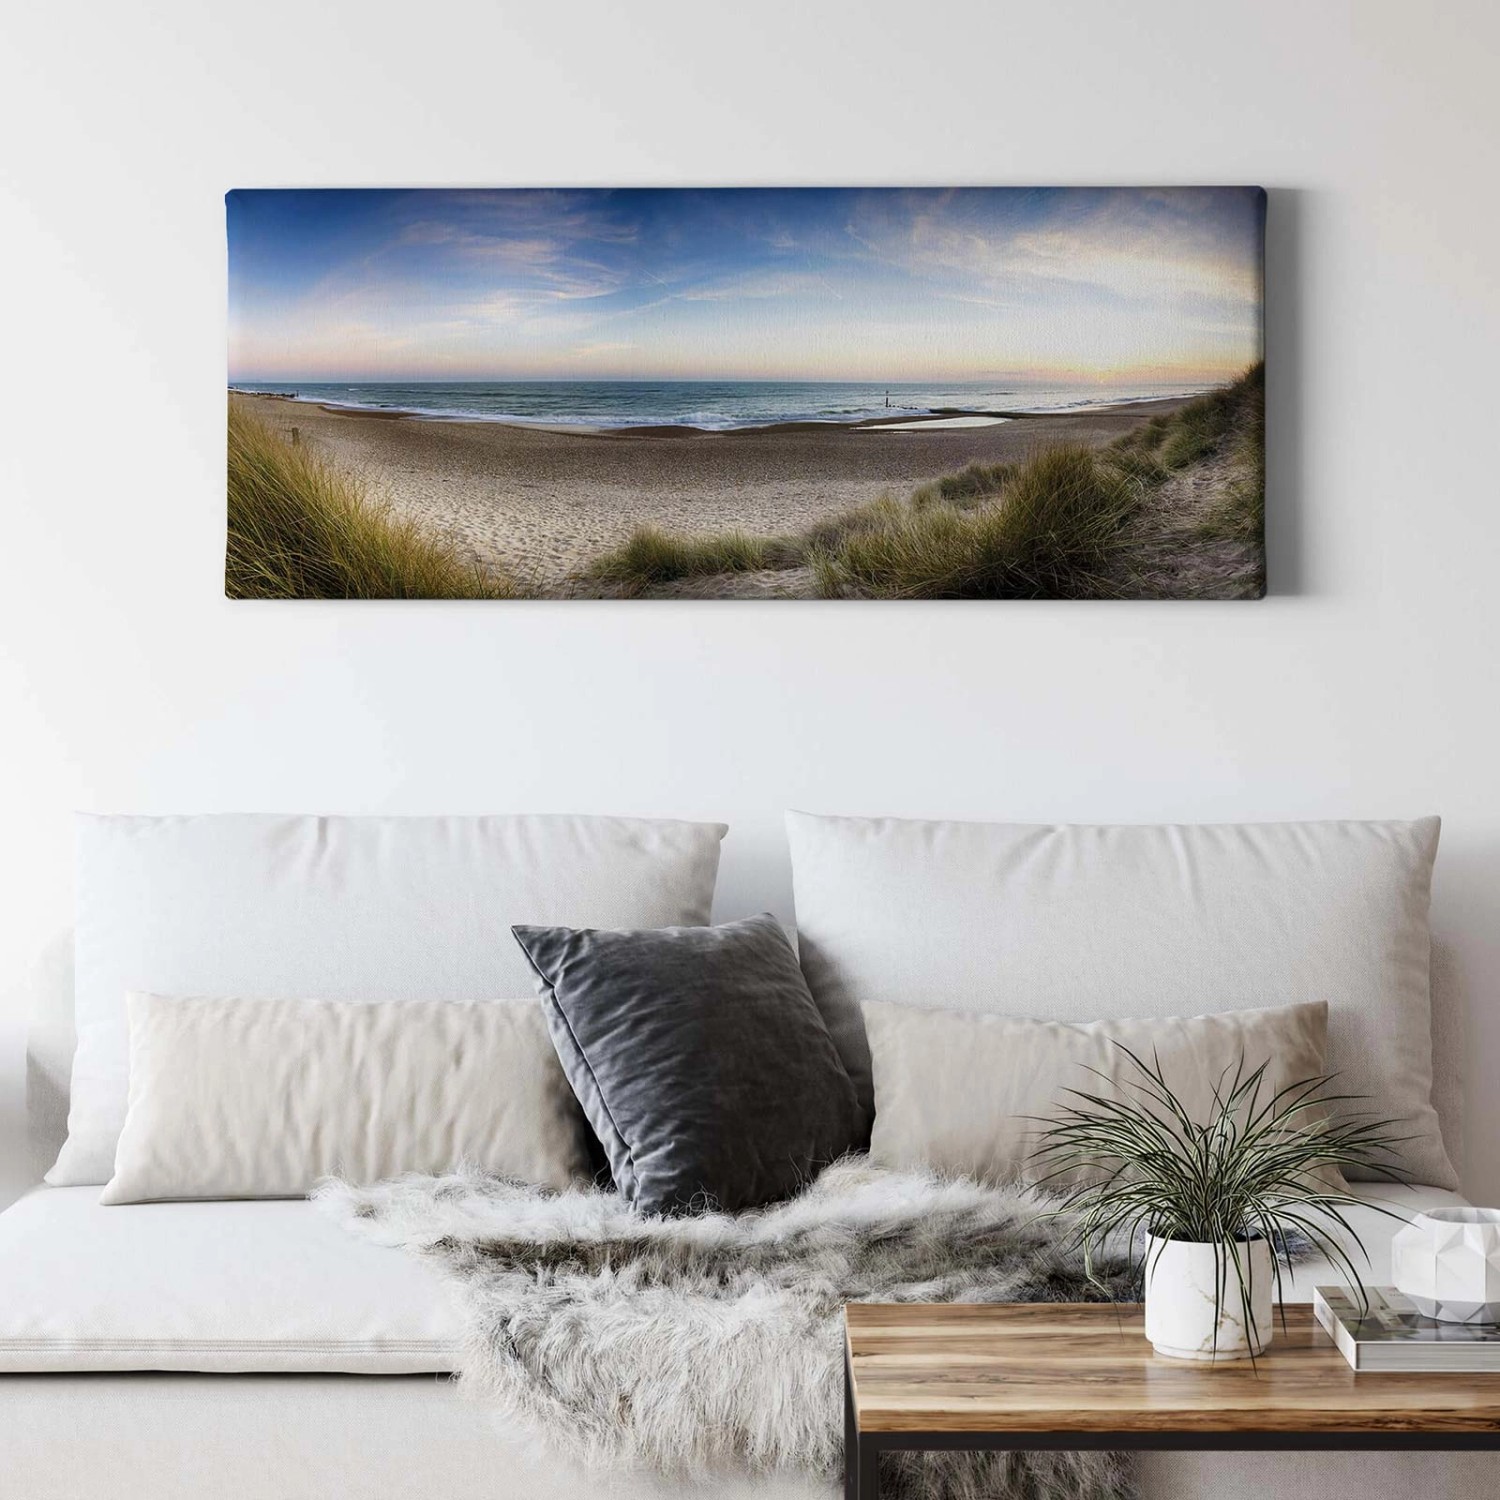 Bricoflor Panorama Leinwand Mit Strand Motiv Meer Leinwandbild In Blau Und Grün Sandstrand Wandbild Ideal Für Schlafzimm